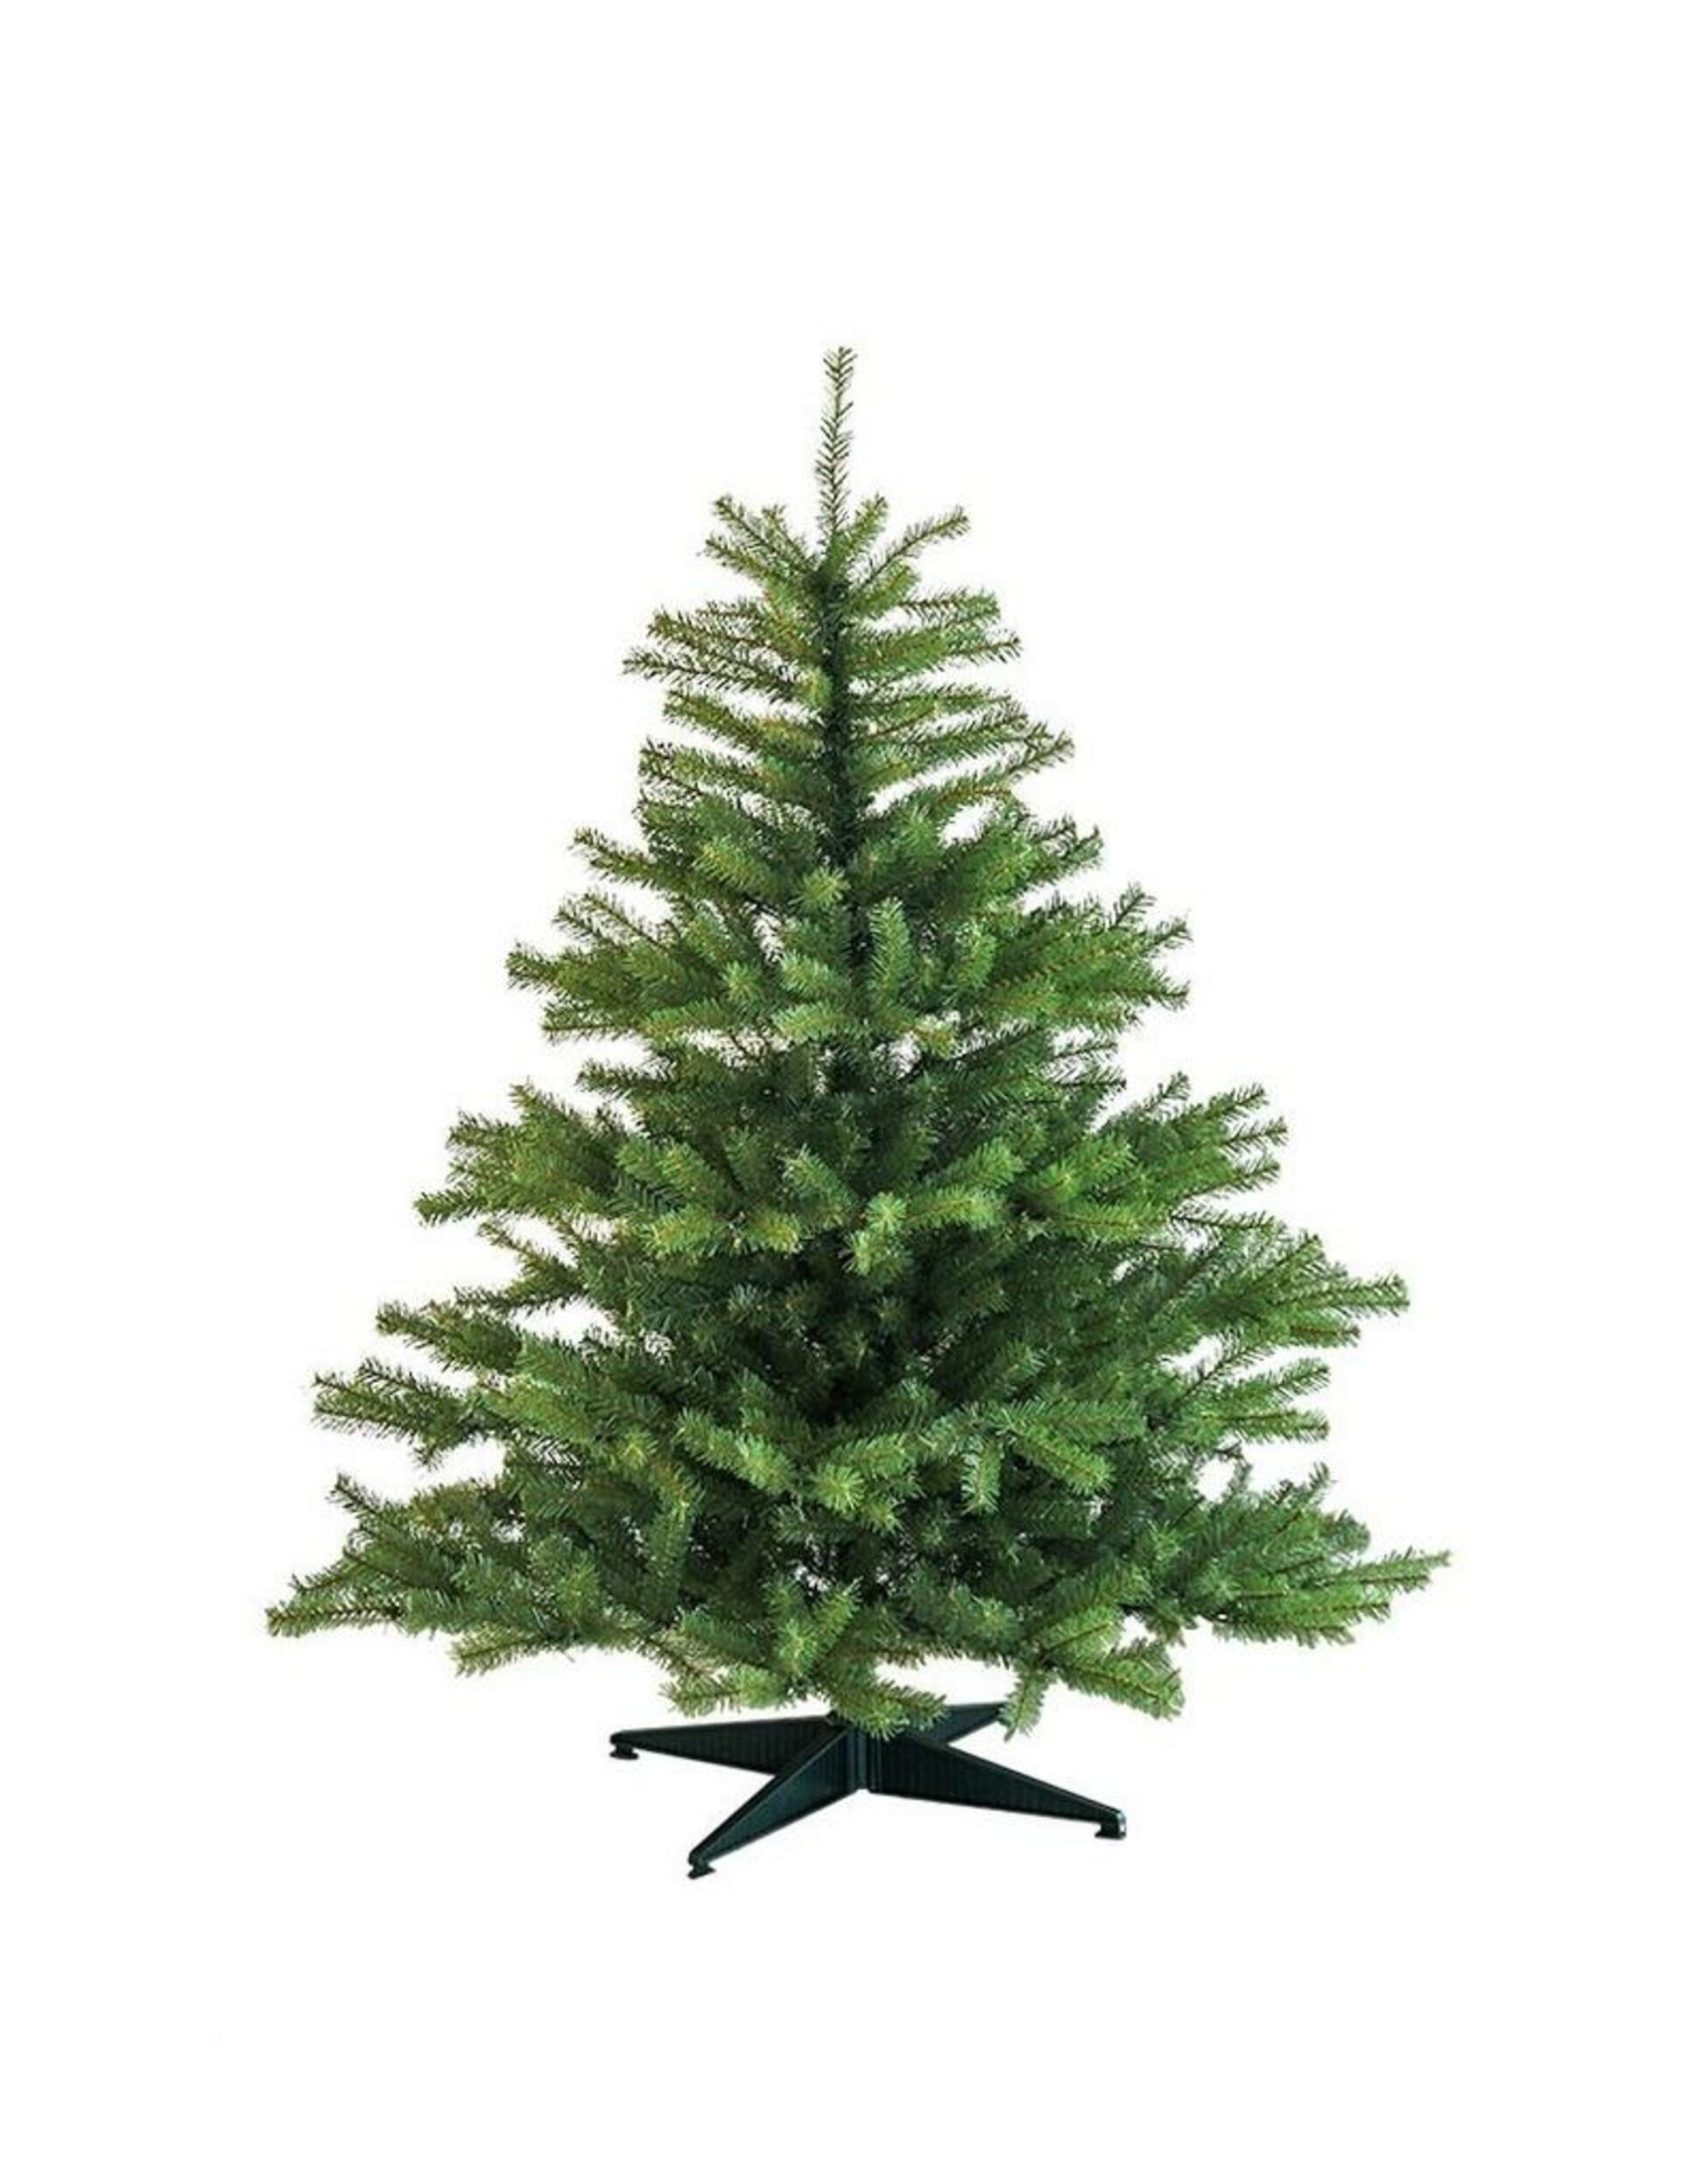 DecoLED Umělý vánoční stromek 180 cm, smrček Naturalna s 2D jehličím